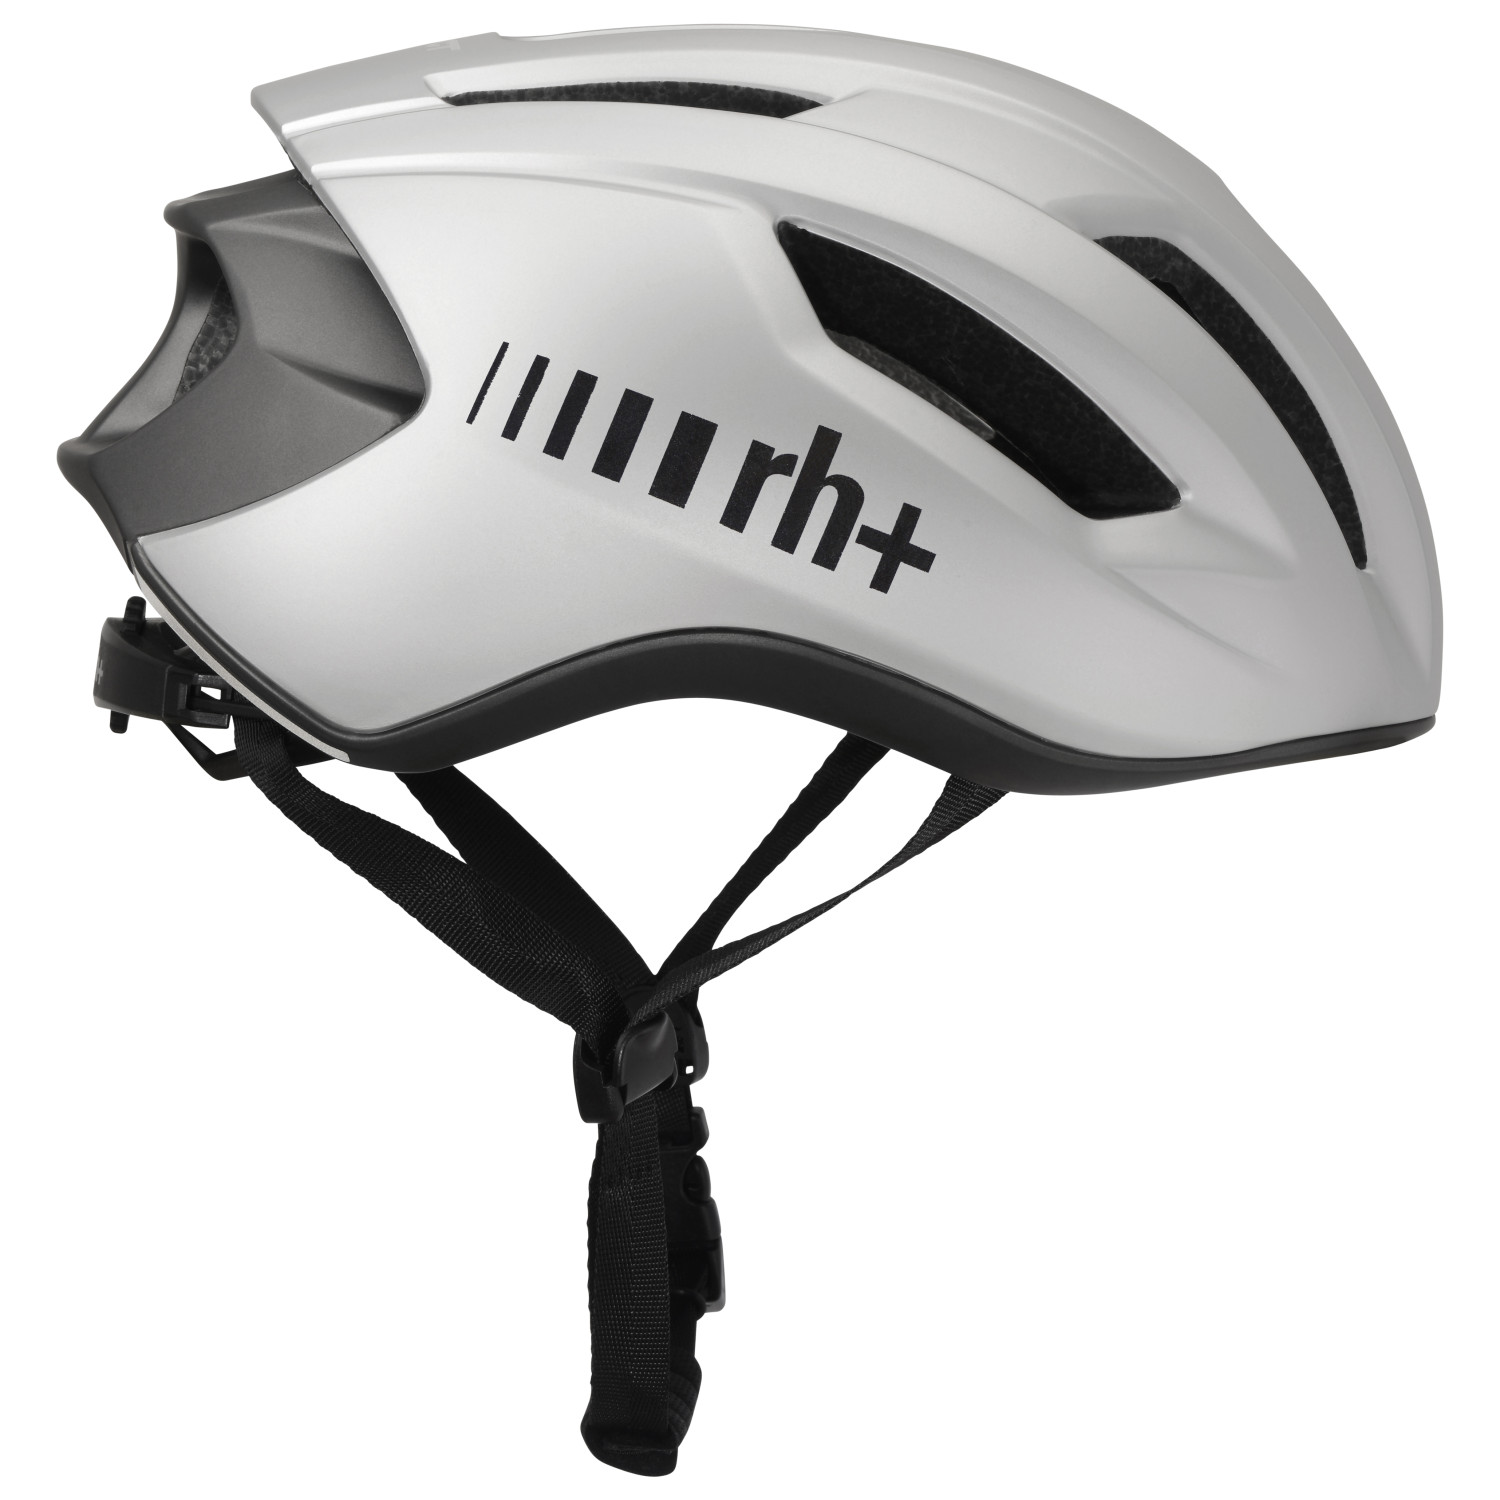 Велосипедный шлем Rh+ Bike Helm Compact, цвет Matt Grey Metal/Anthracite